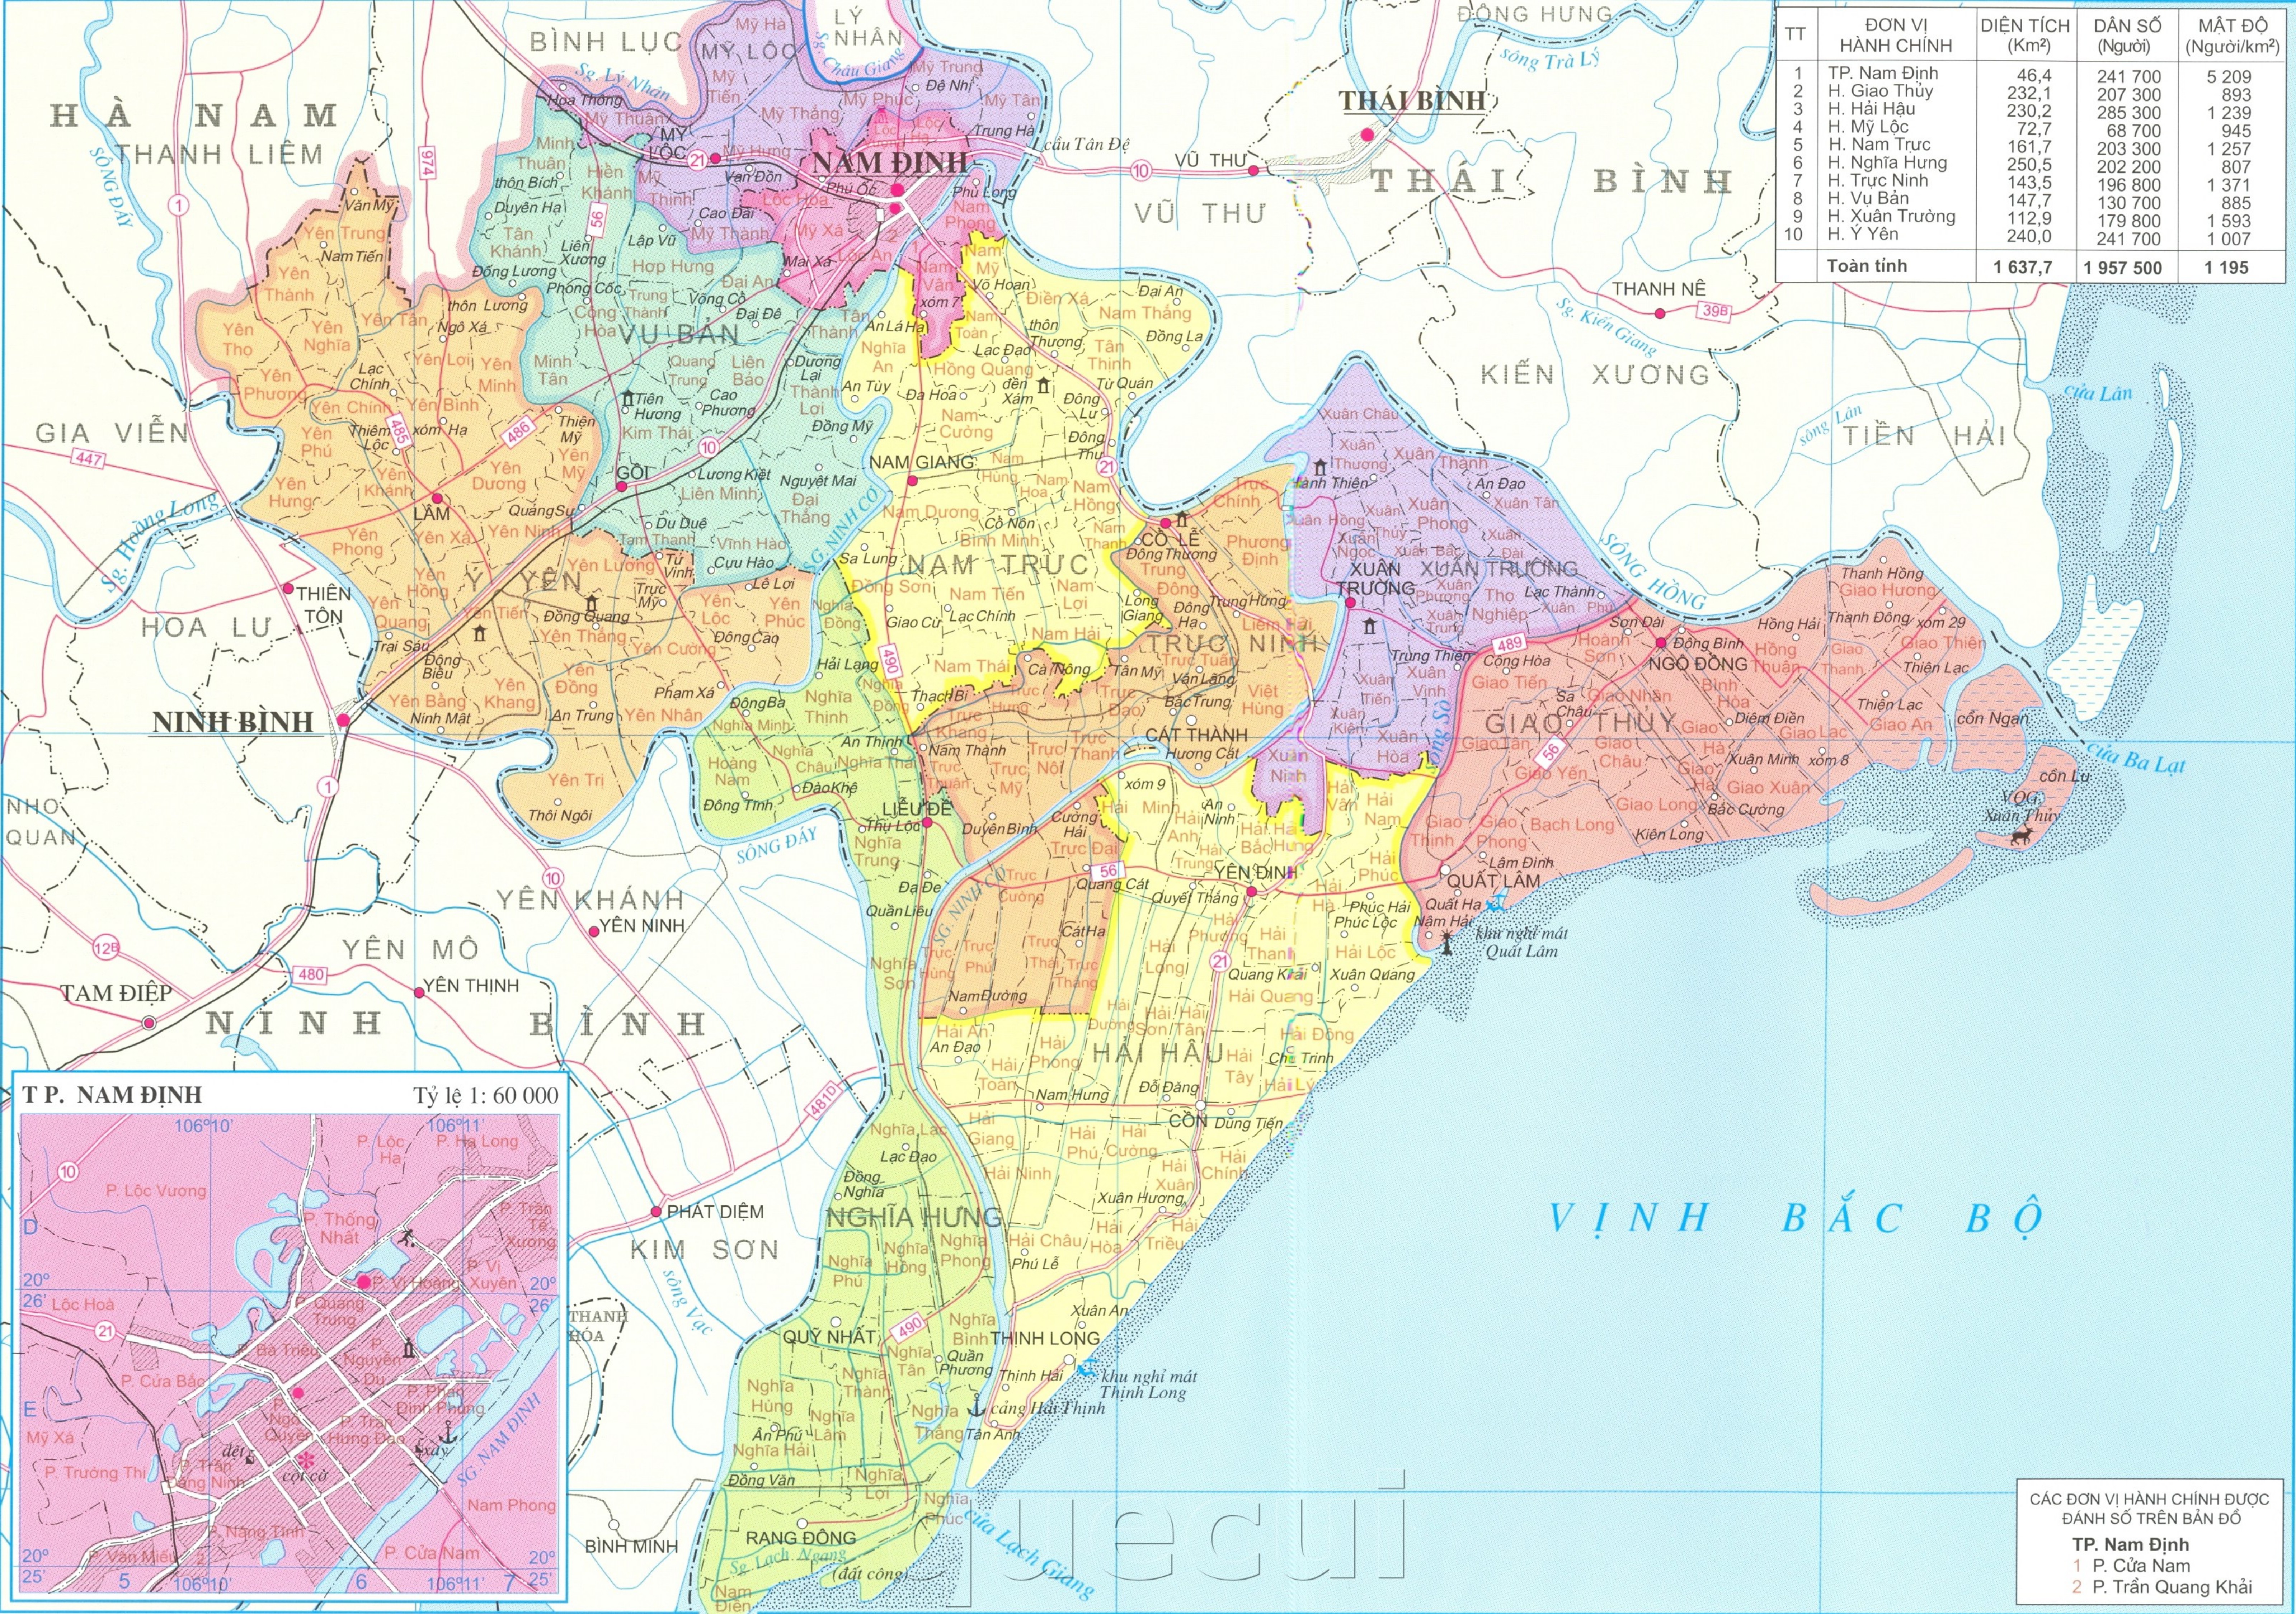 Tìm hiểu chi tiết về bản đồ hành chính tỉnh Nam Định với chúng tôi, nơi cung cấp những thông tin đầy đủ và chính xác nhất về cơ sở hạ tầng, địa lý và dân số. Bạn sẽ có cái nhìn toàn diện và chính xác nhất về Nam Định thông qua bản đồ này.